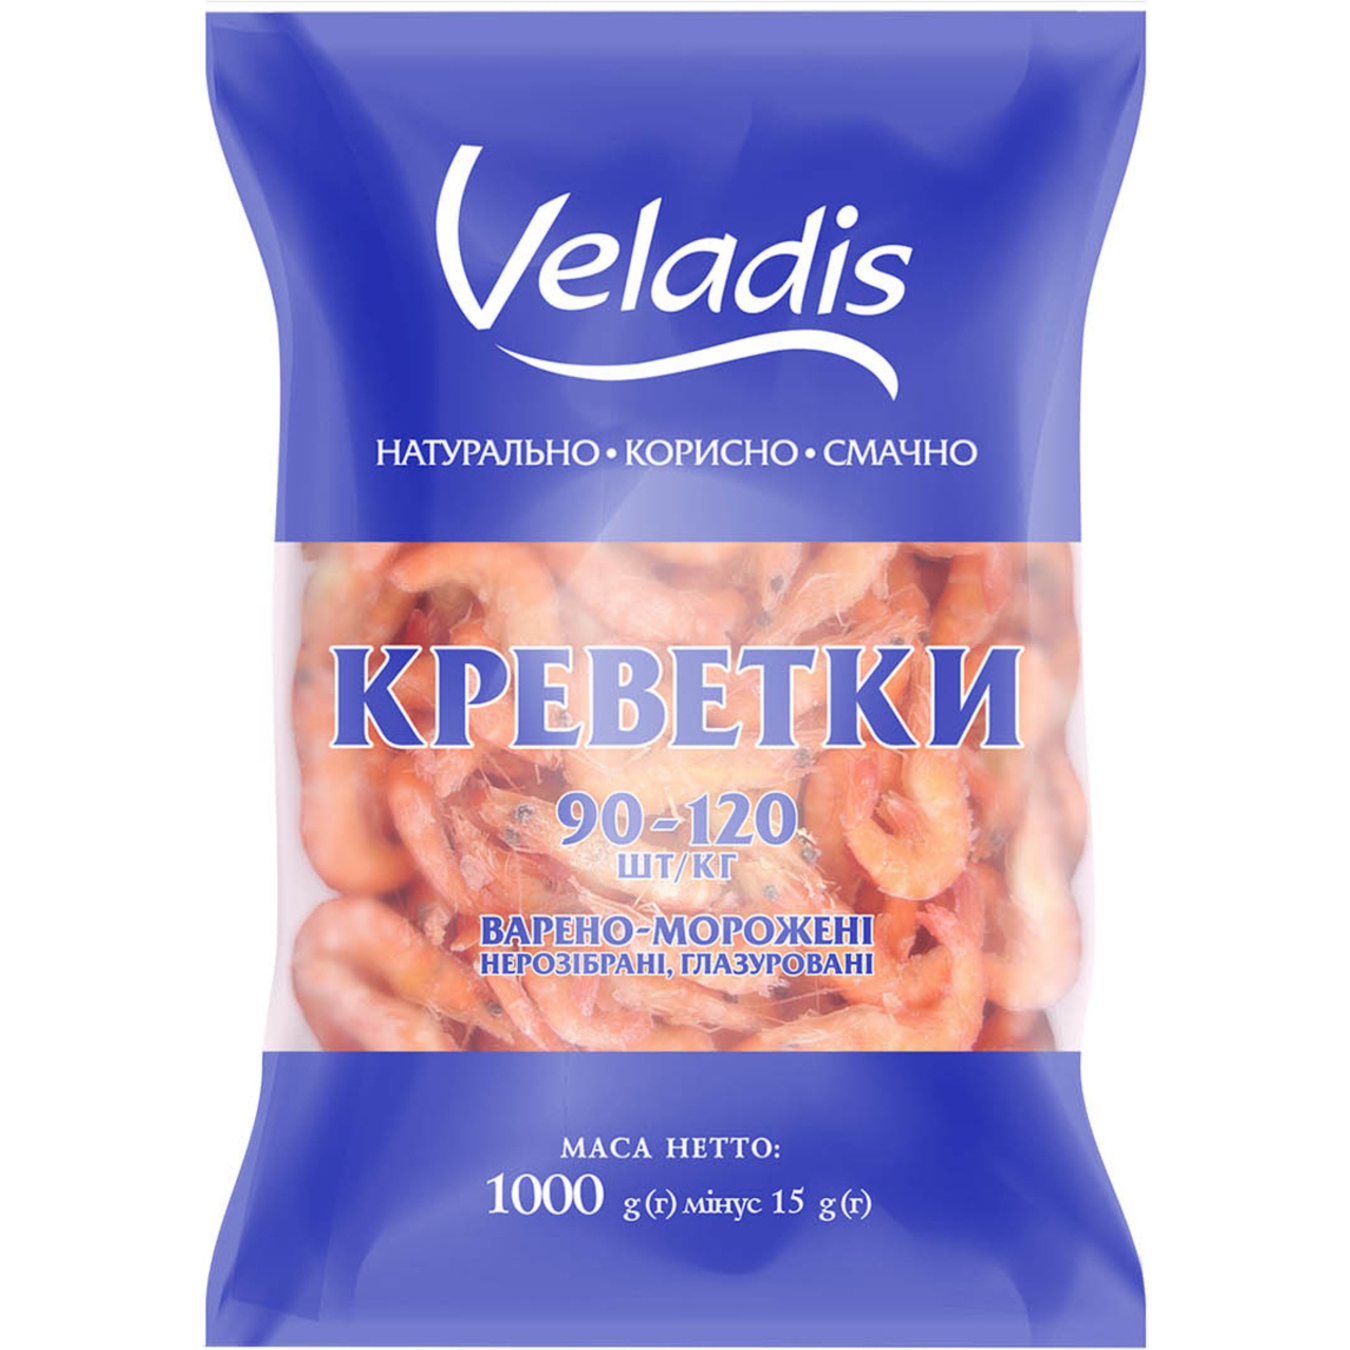 Креветки Veladis варено-морожені 90-120 1кг